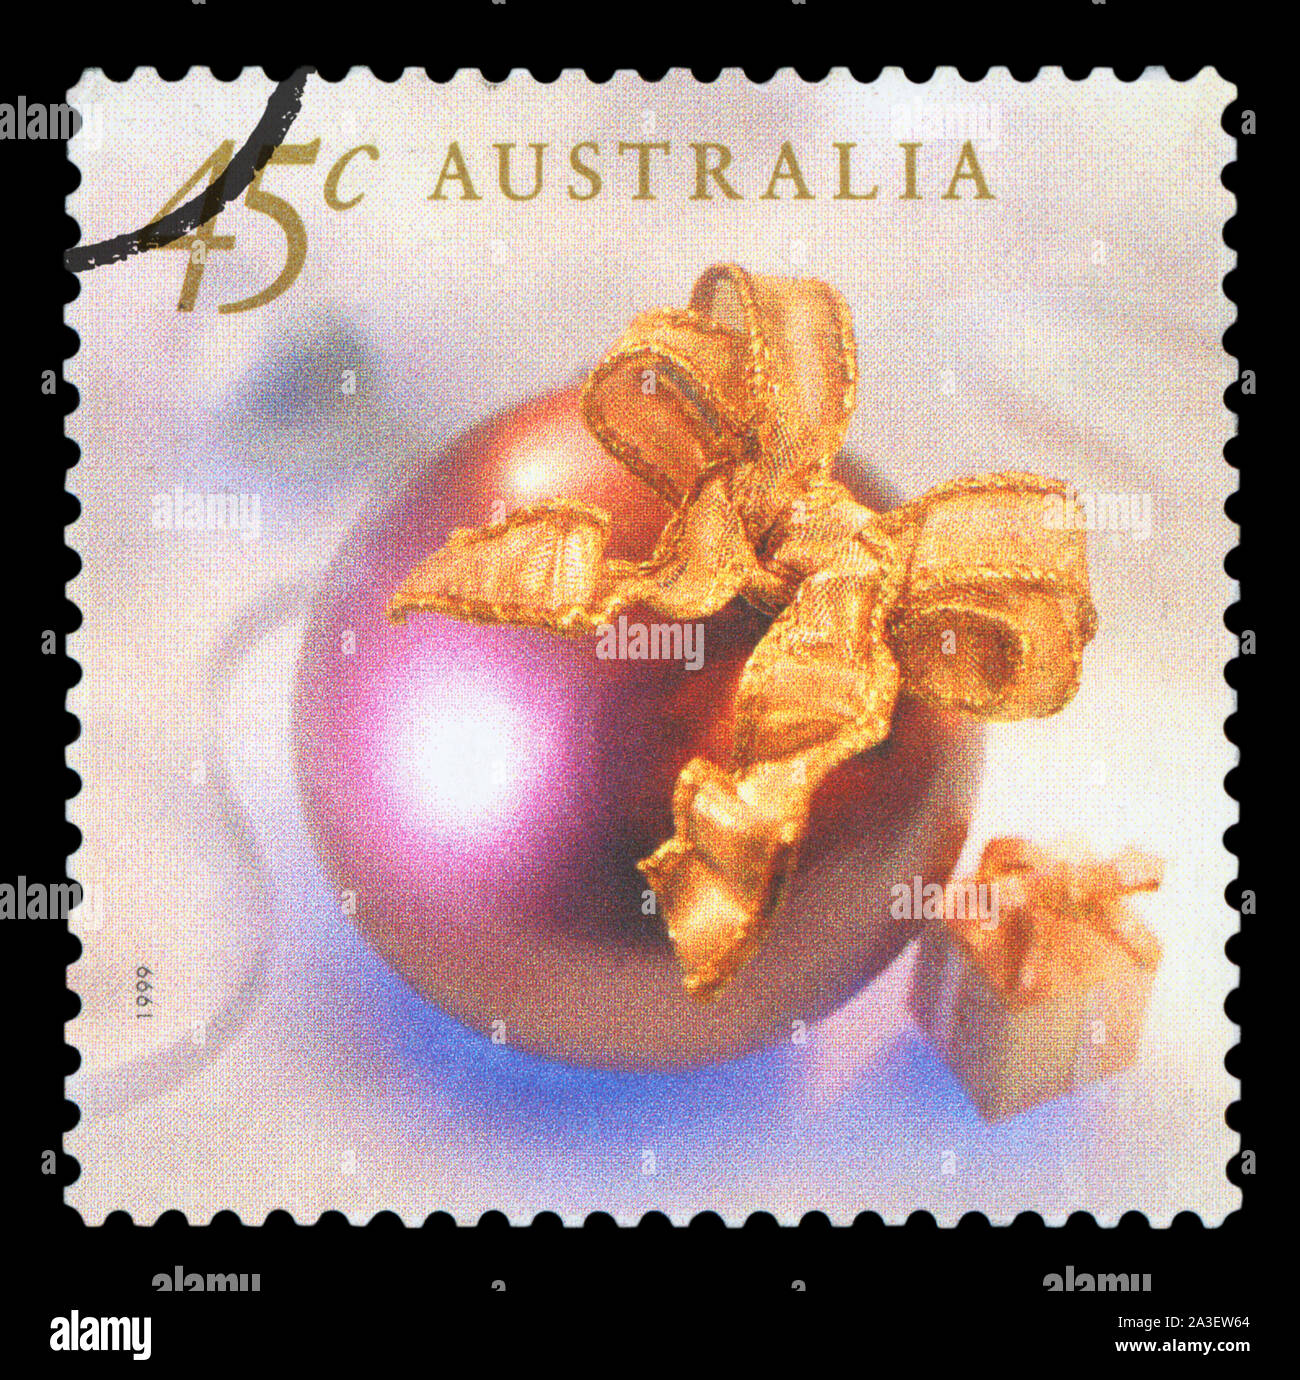 L'AUSTRALIE - circa 1999 : timbre-poste en Australie, montre les décorations de Noël vers 1999. Banque D'Images